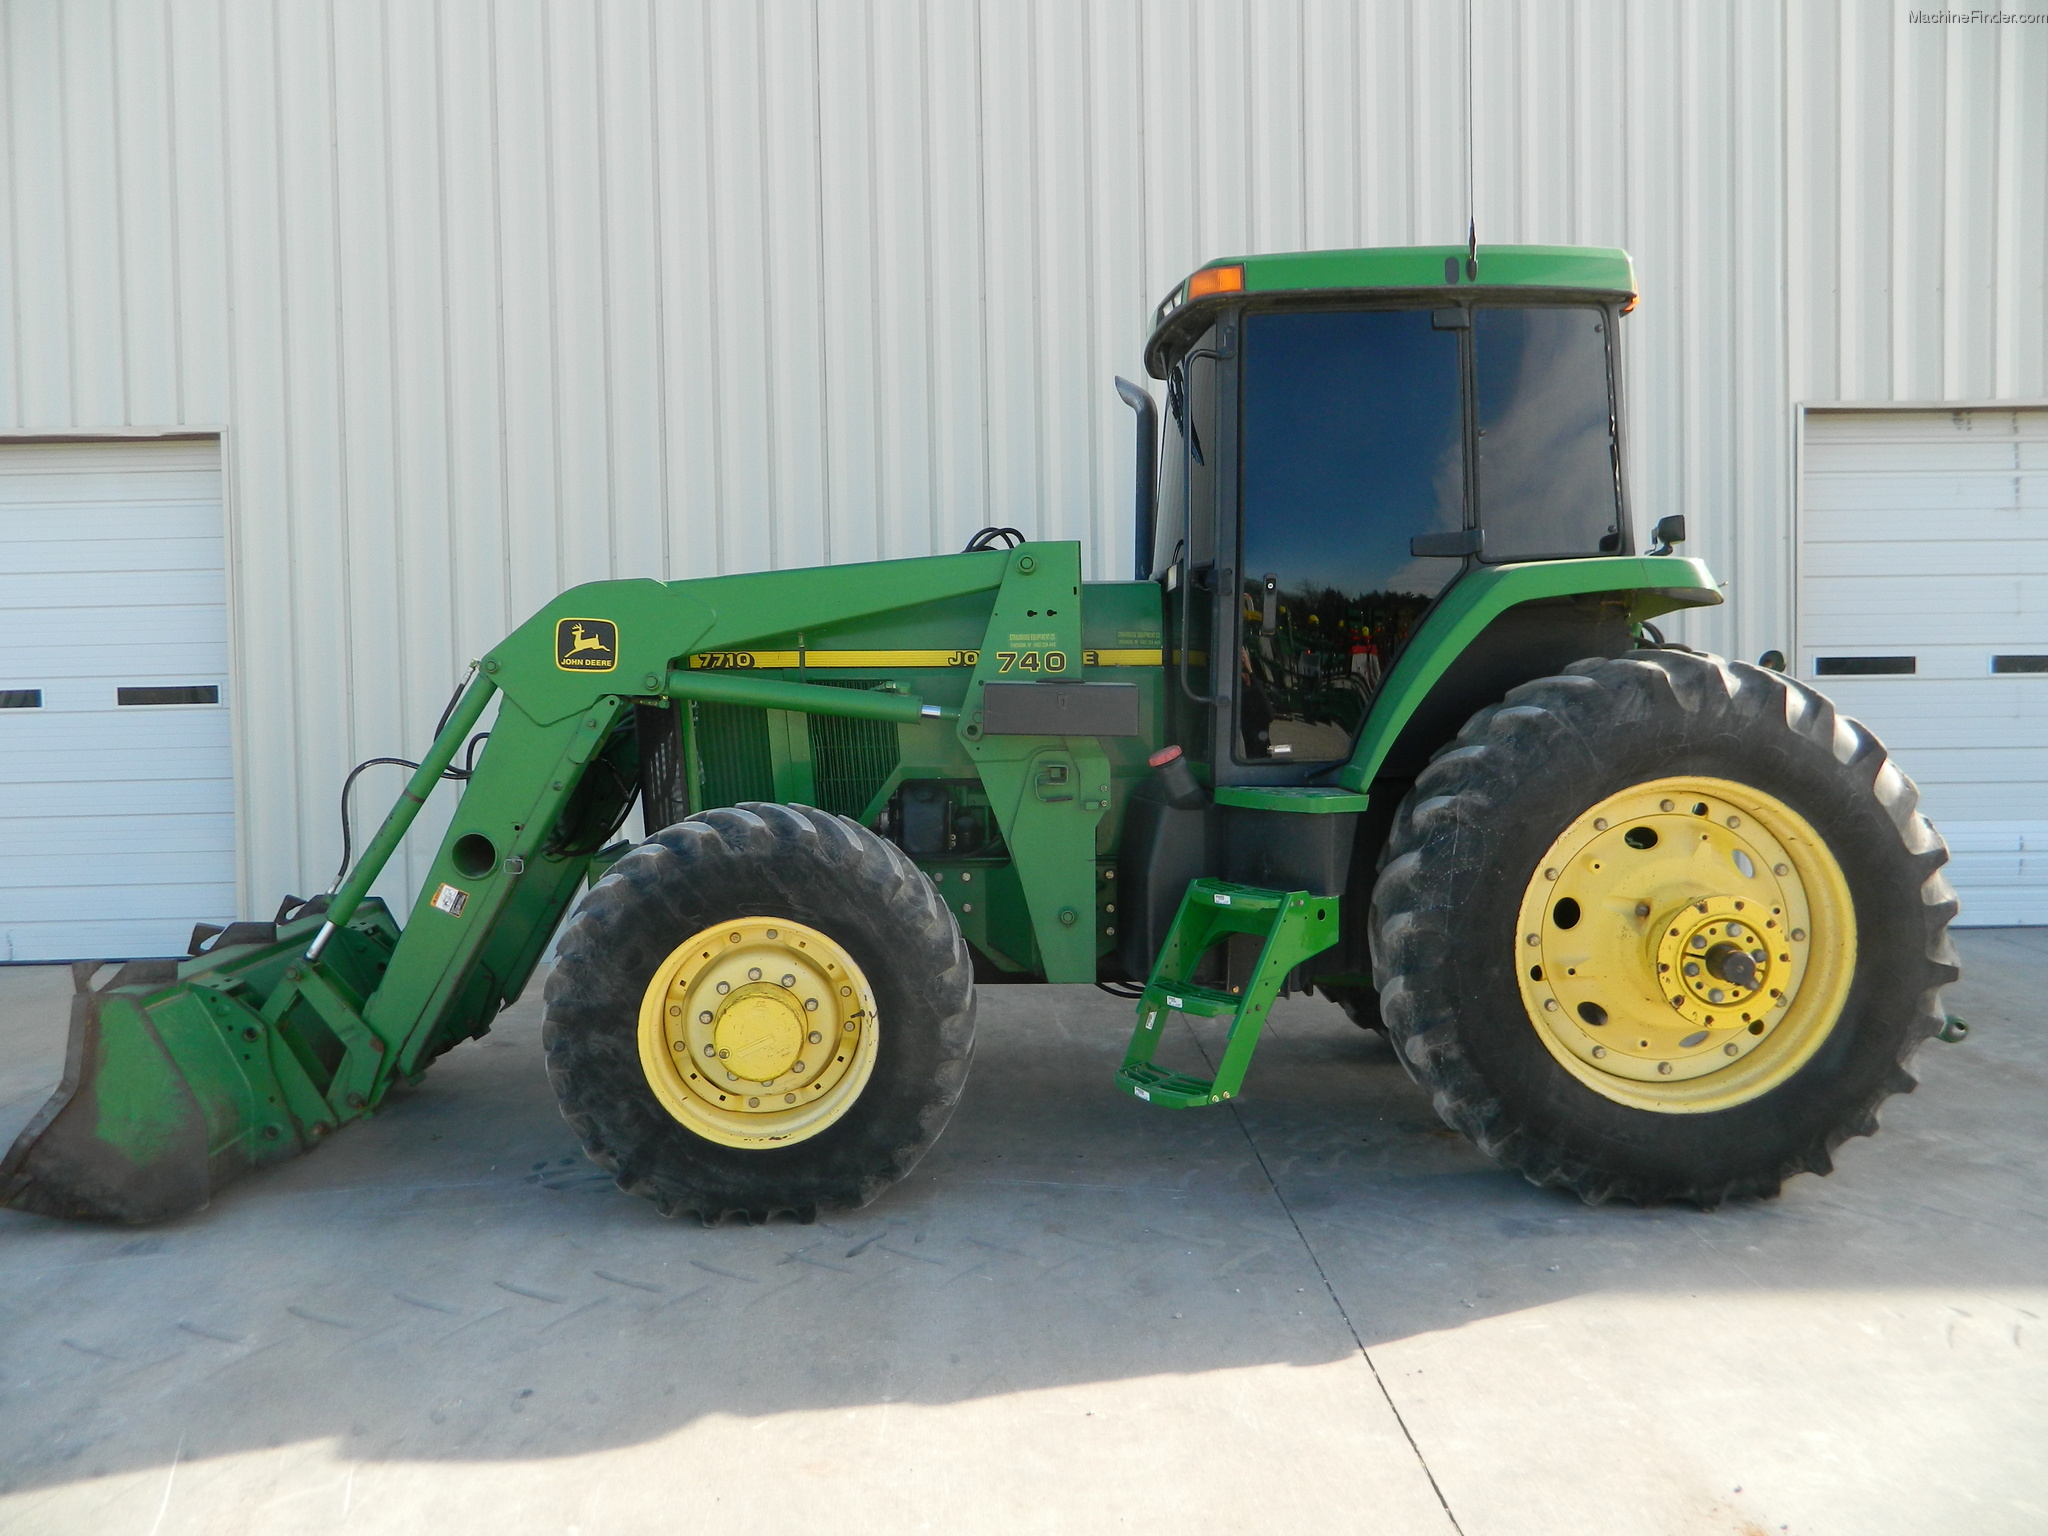 1998 John Deere 7710 Tractors - Row Crop (+100hp) - John ...